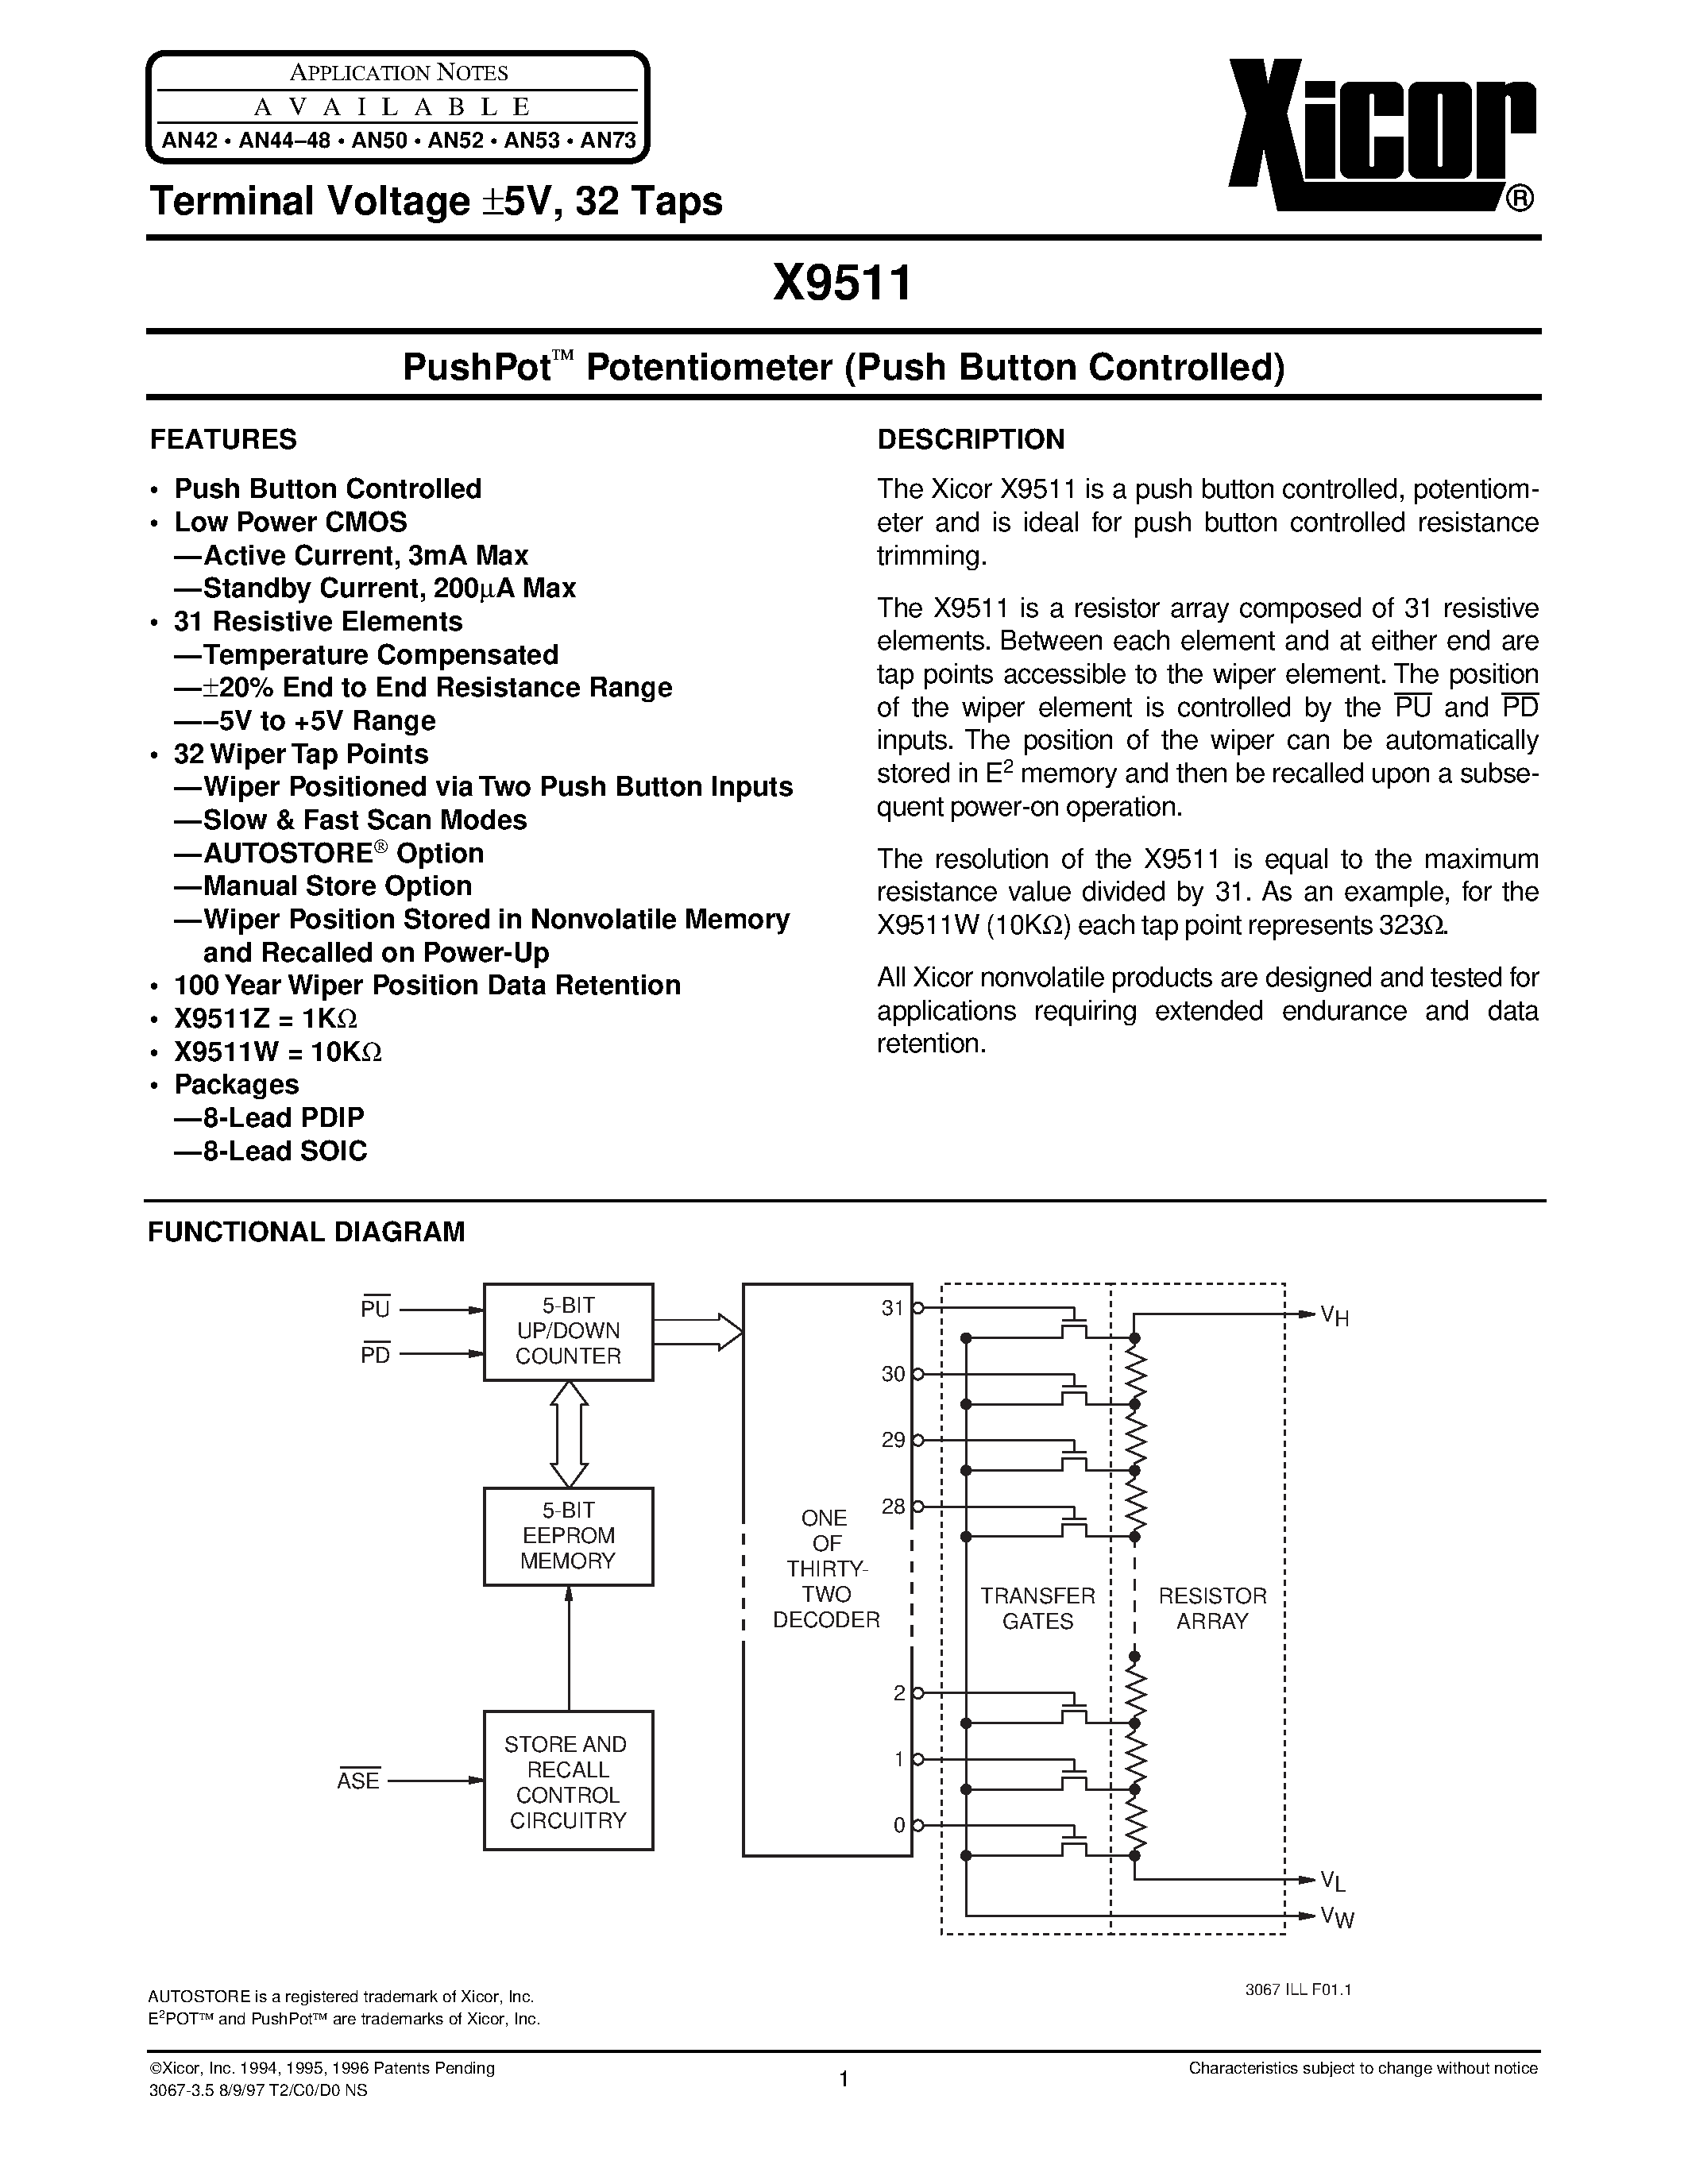 Datasheet X9511ZP - PushPot O Potentiometer (Push Button Controlled) page 1